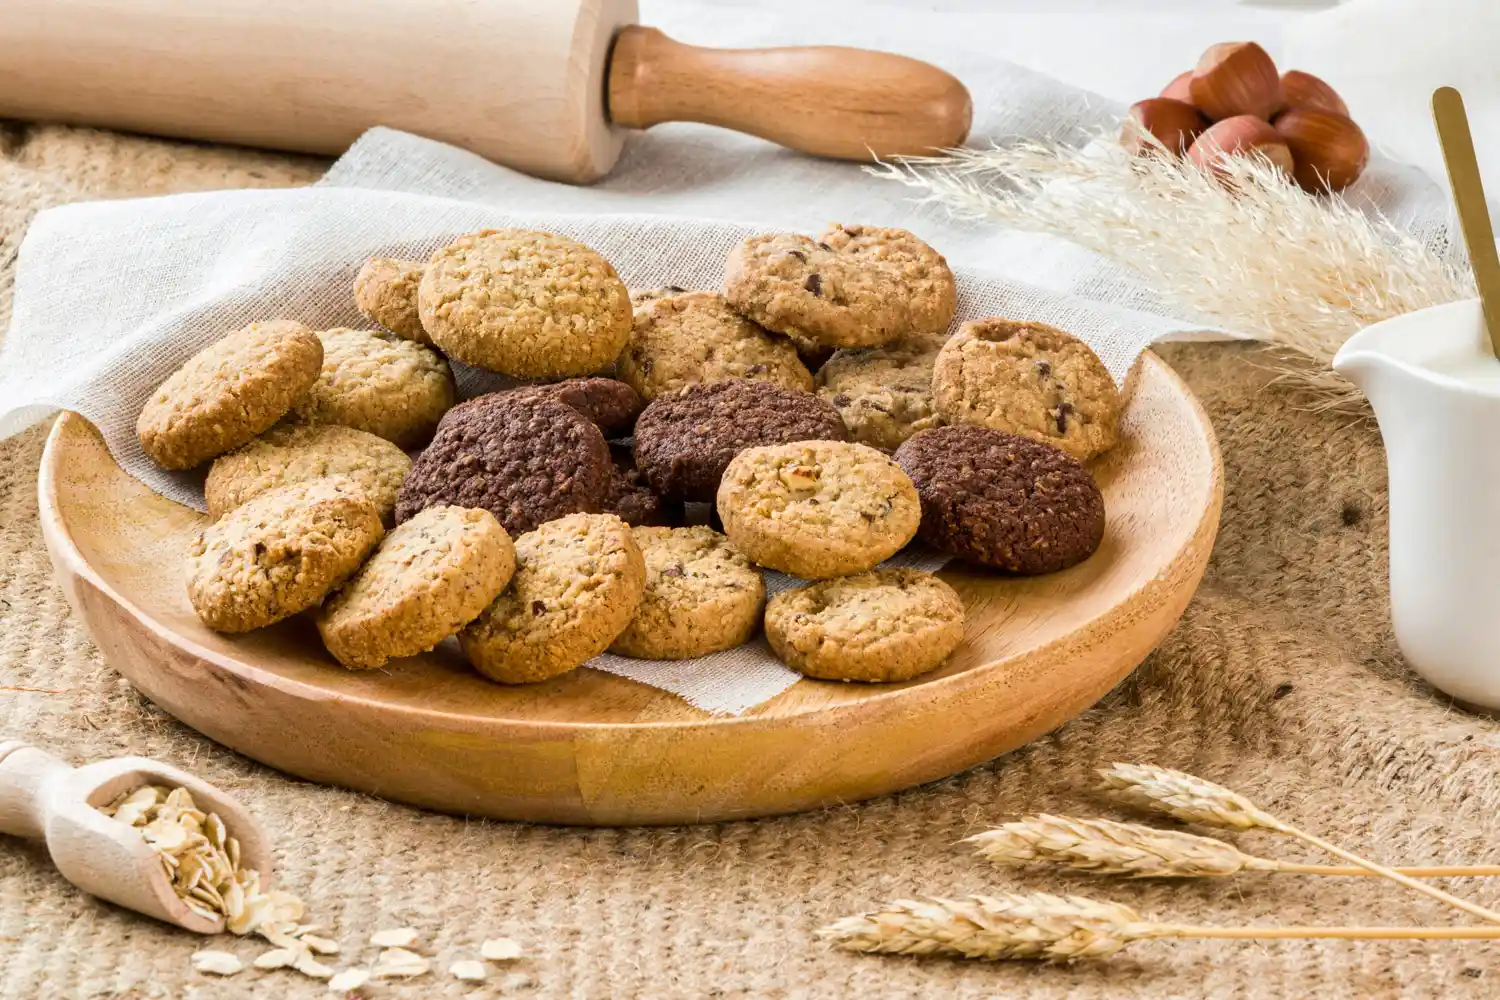 Petits biscuits sablés présentés sur une assiette